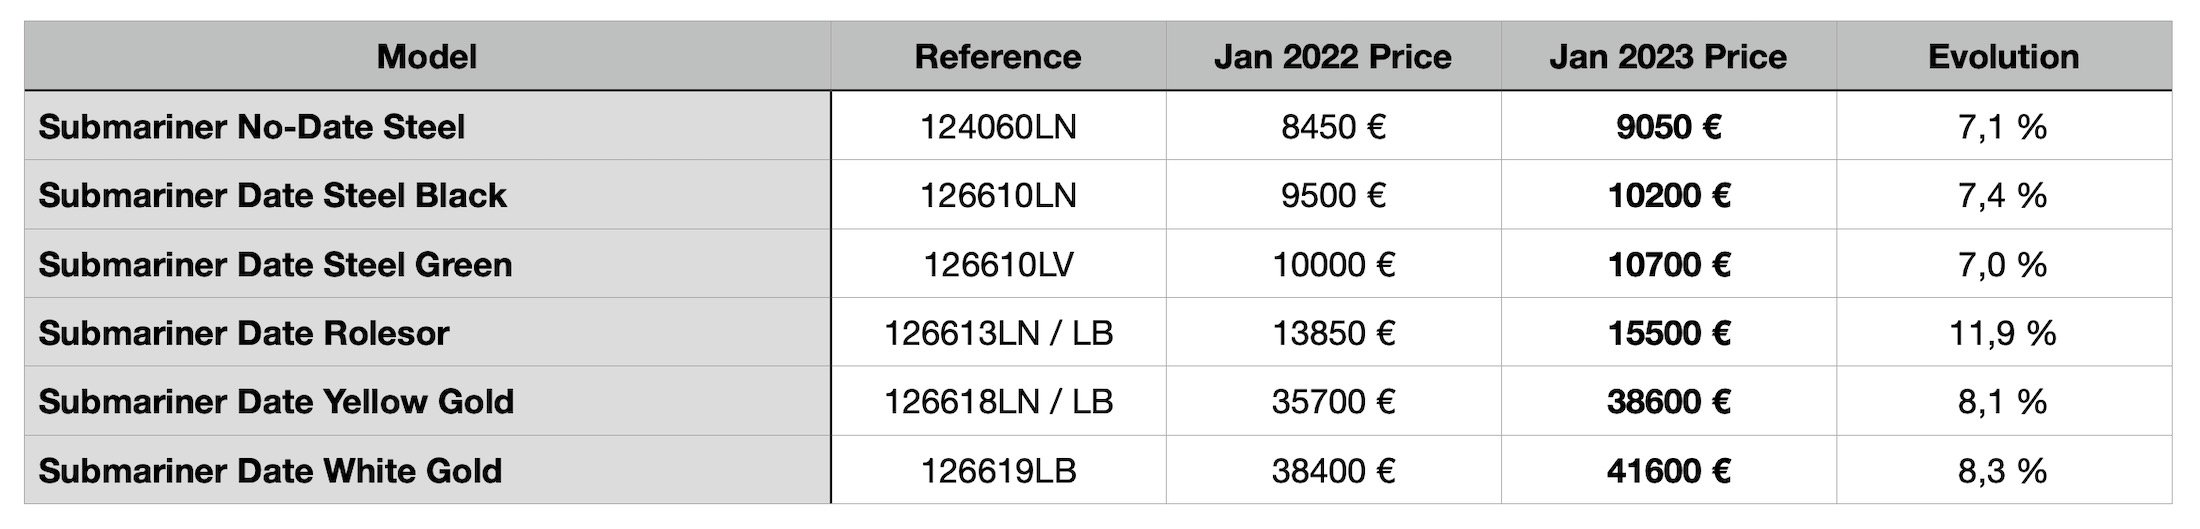 Прейскурант Rolex 2023 года — повышение по сравнению с 2022 годом - Rolex Submariner